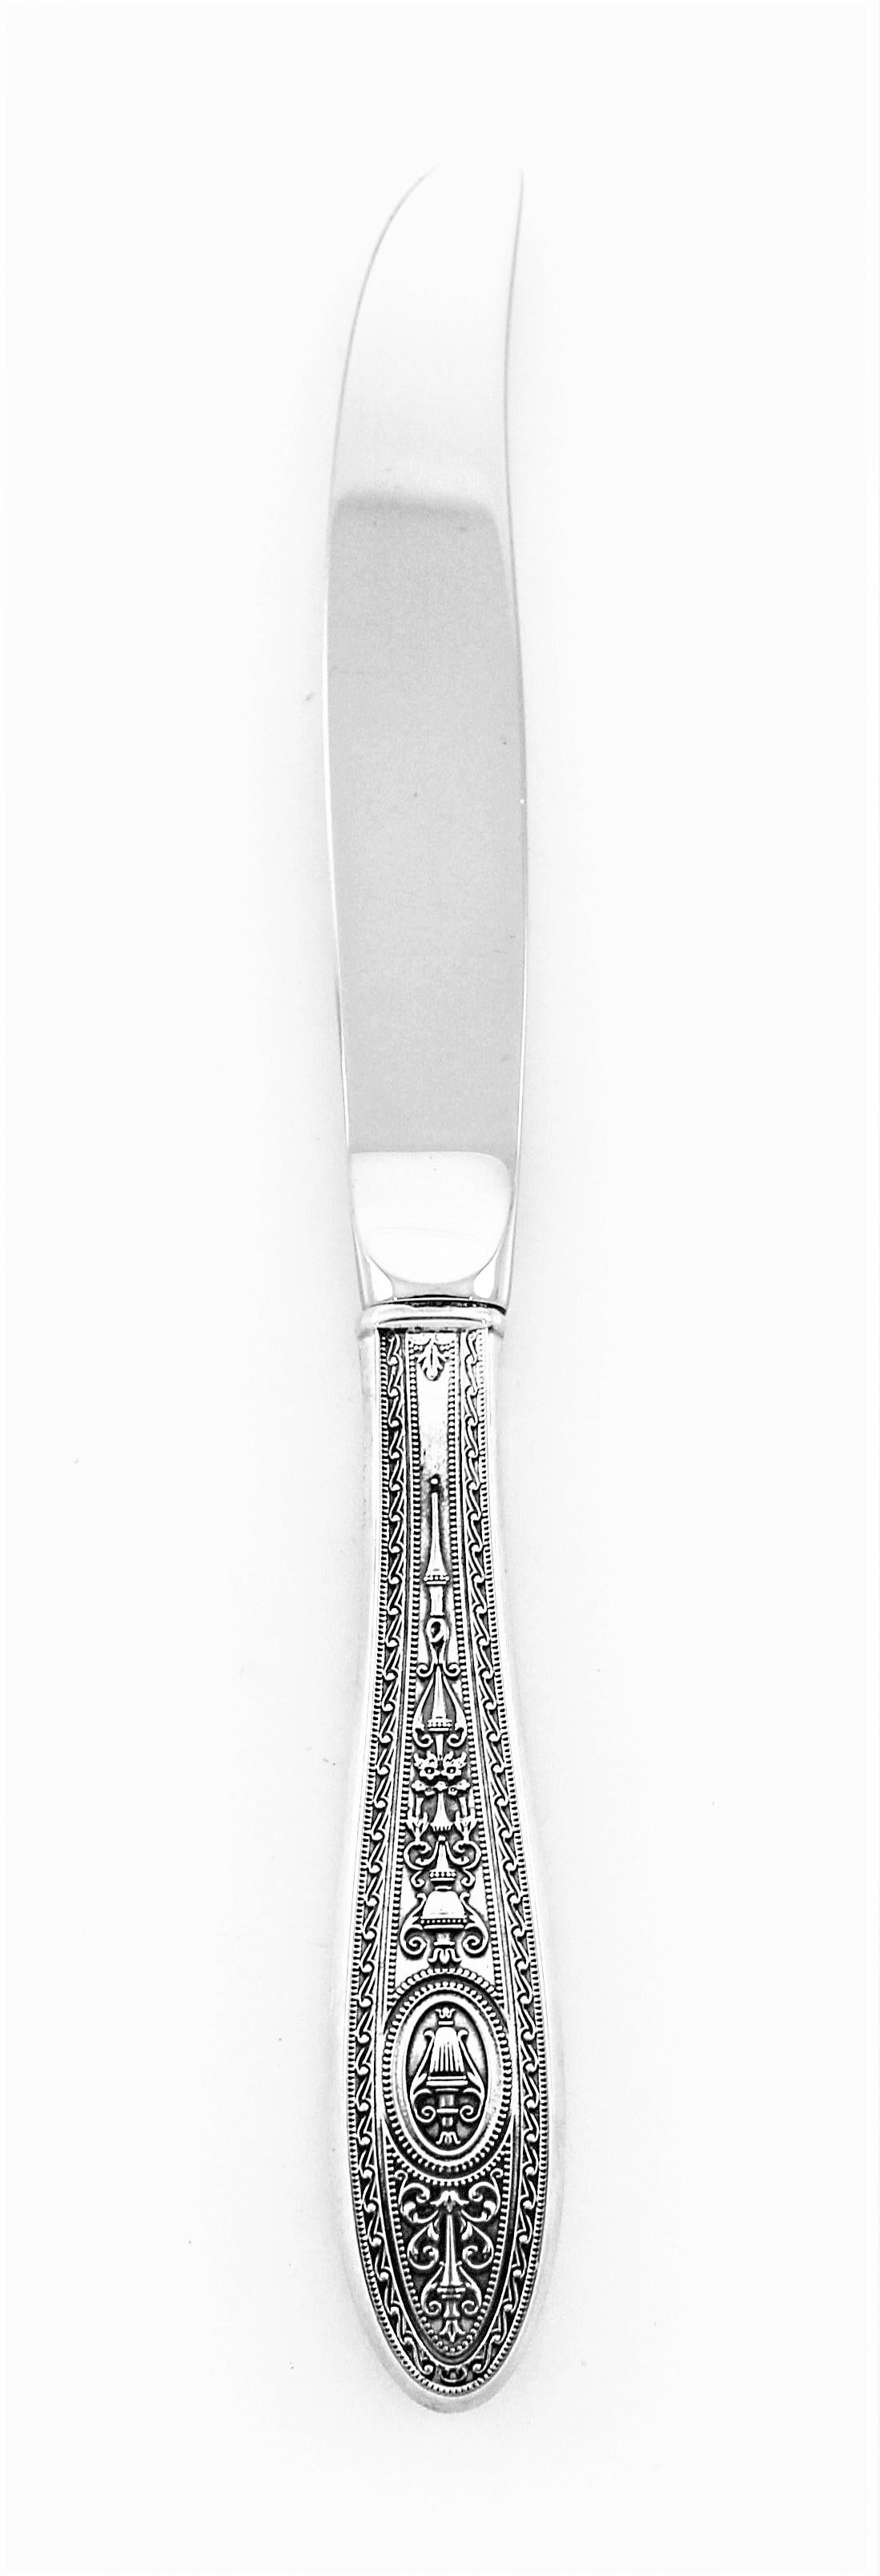 Le délicat motif gravé qui fait de Wedgwood l'un des motifs en argent sterling les plus populaires. Son design est intemporel et très classe. L'urne et les motifs tourbillonnants le long de la poignée sont magnifiques.